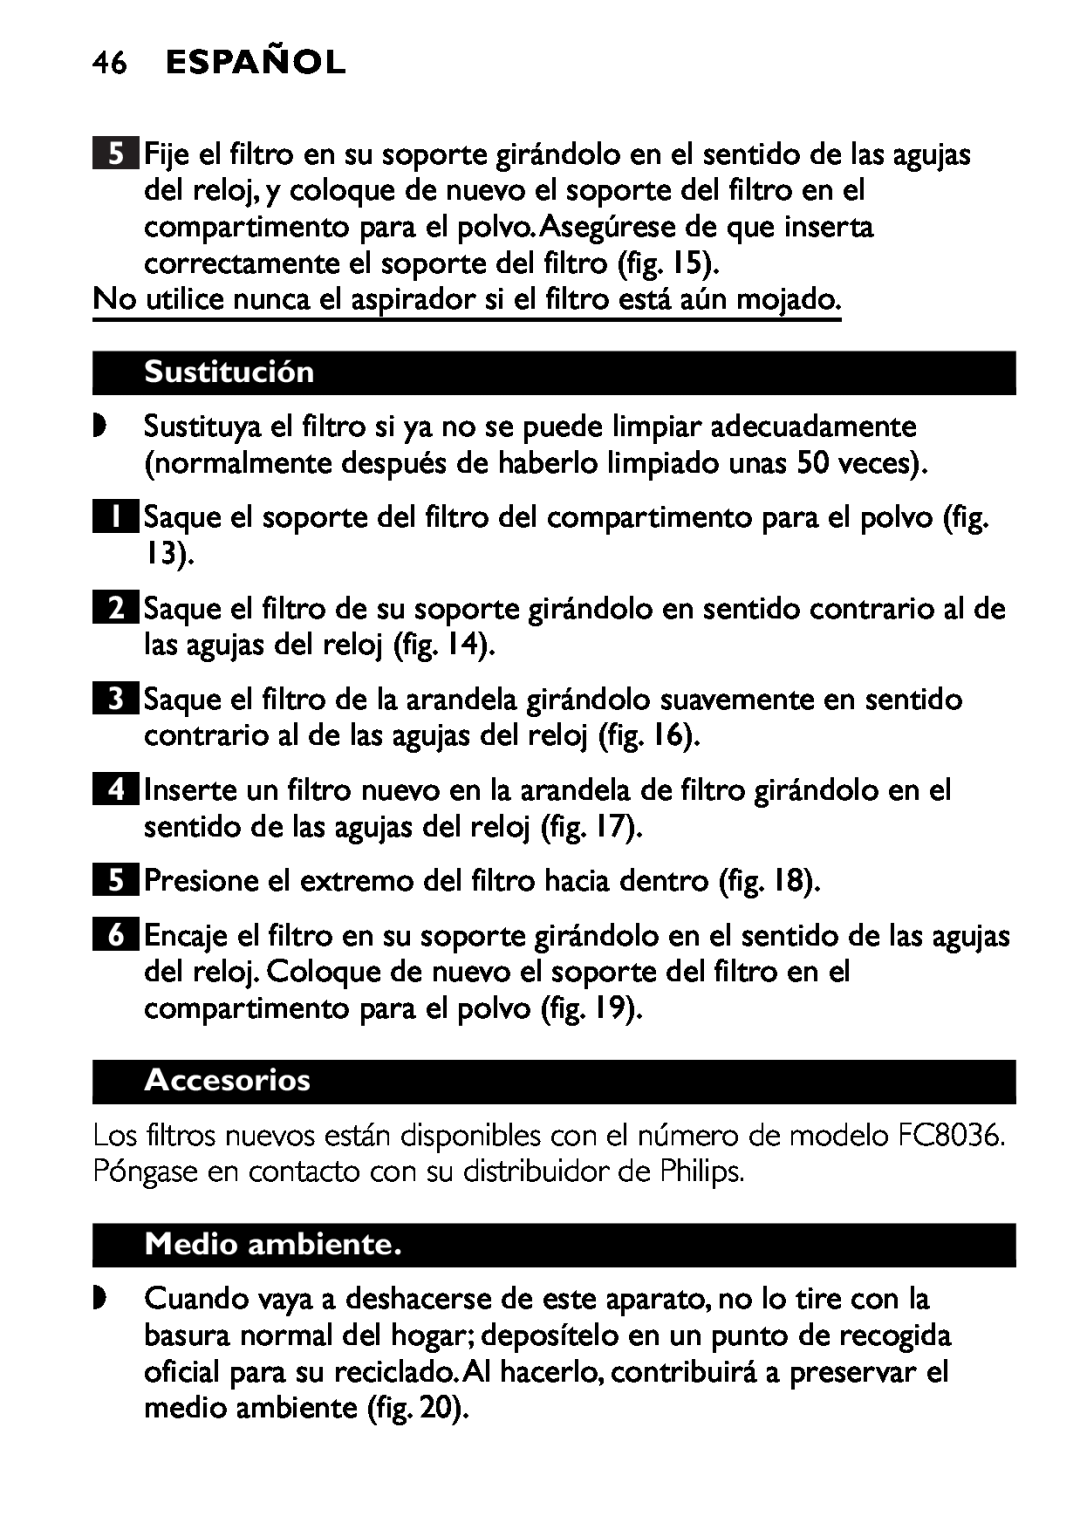 Philips FC6055 manual 46ESPAÑOL, Sustitución, Accesorios, Medio ambiente 